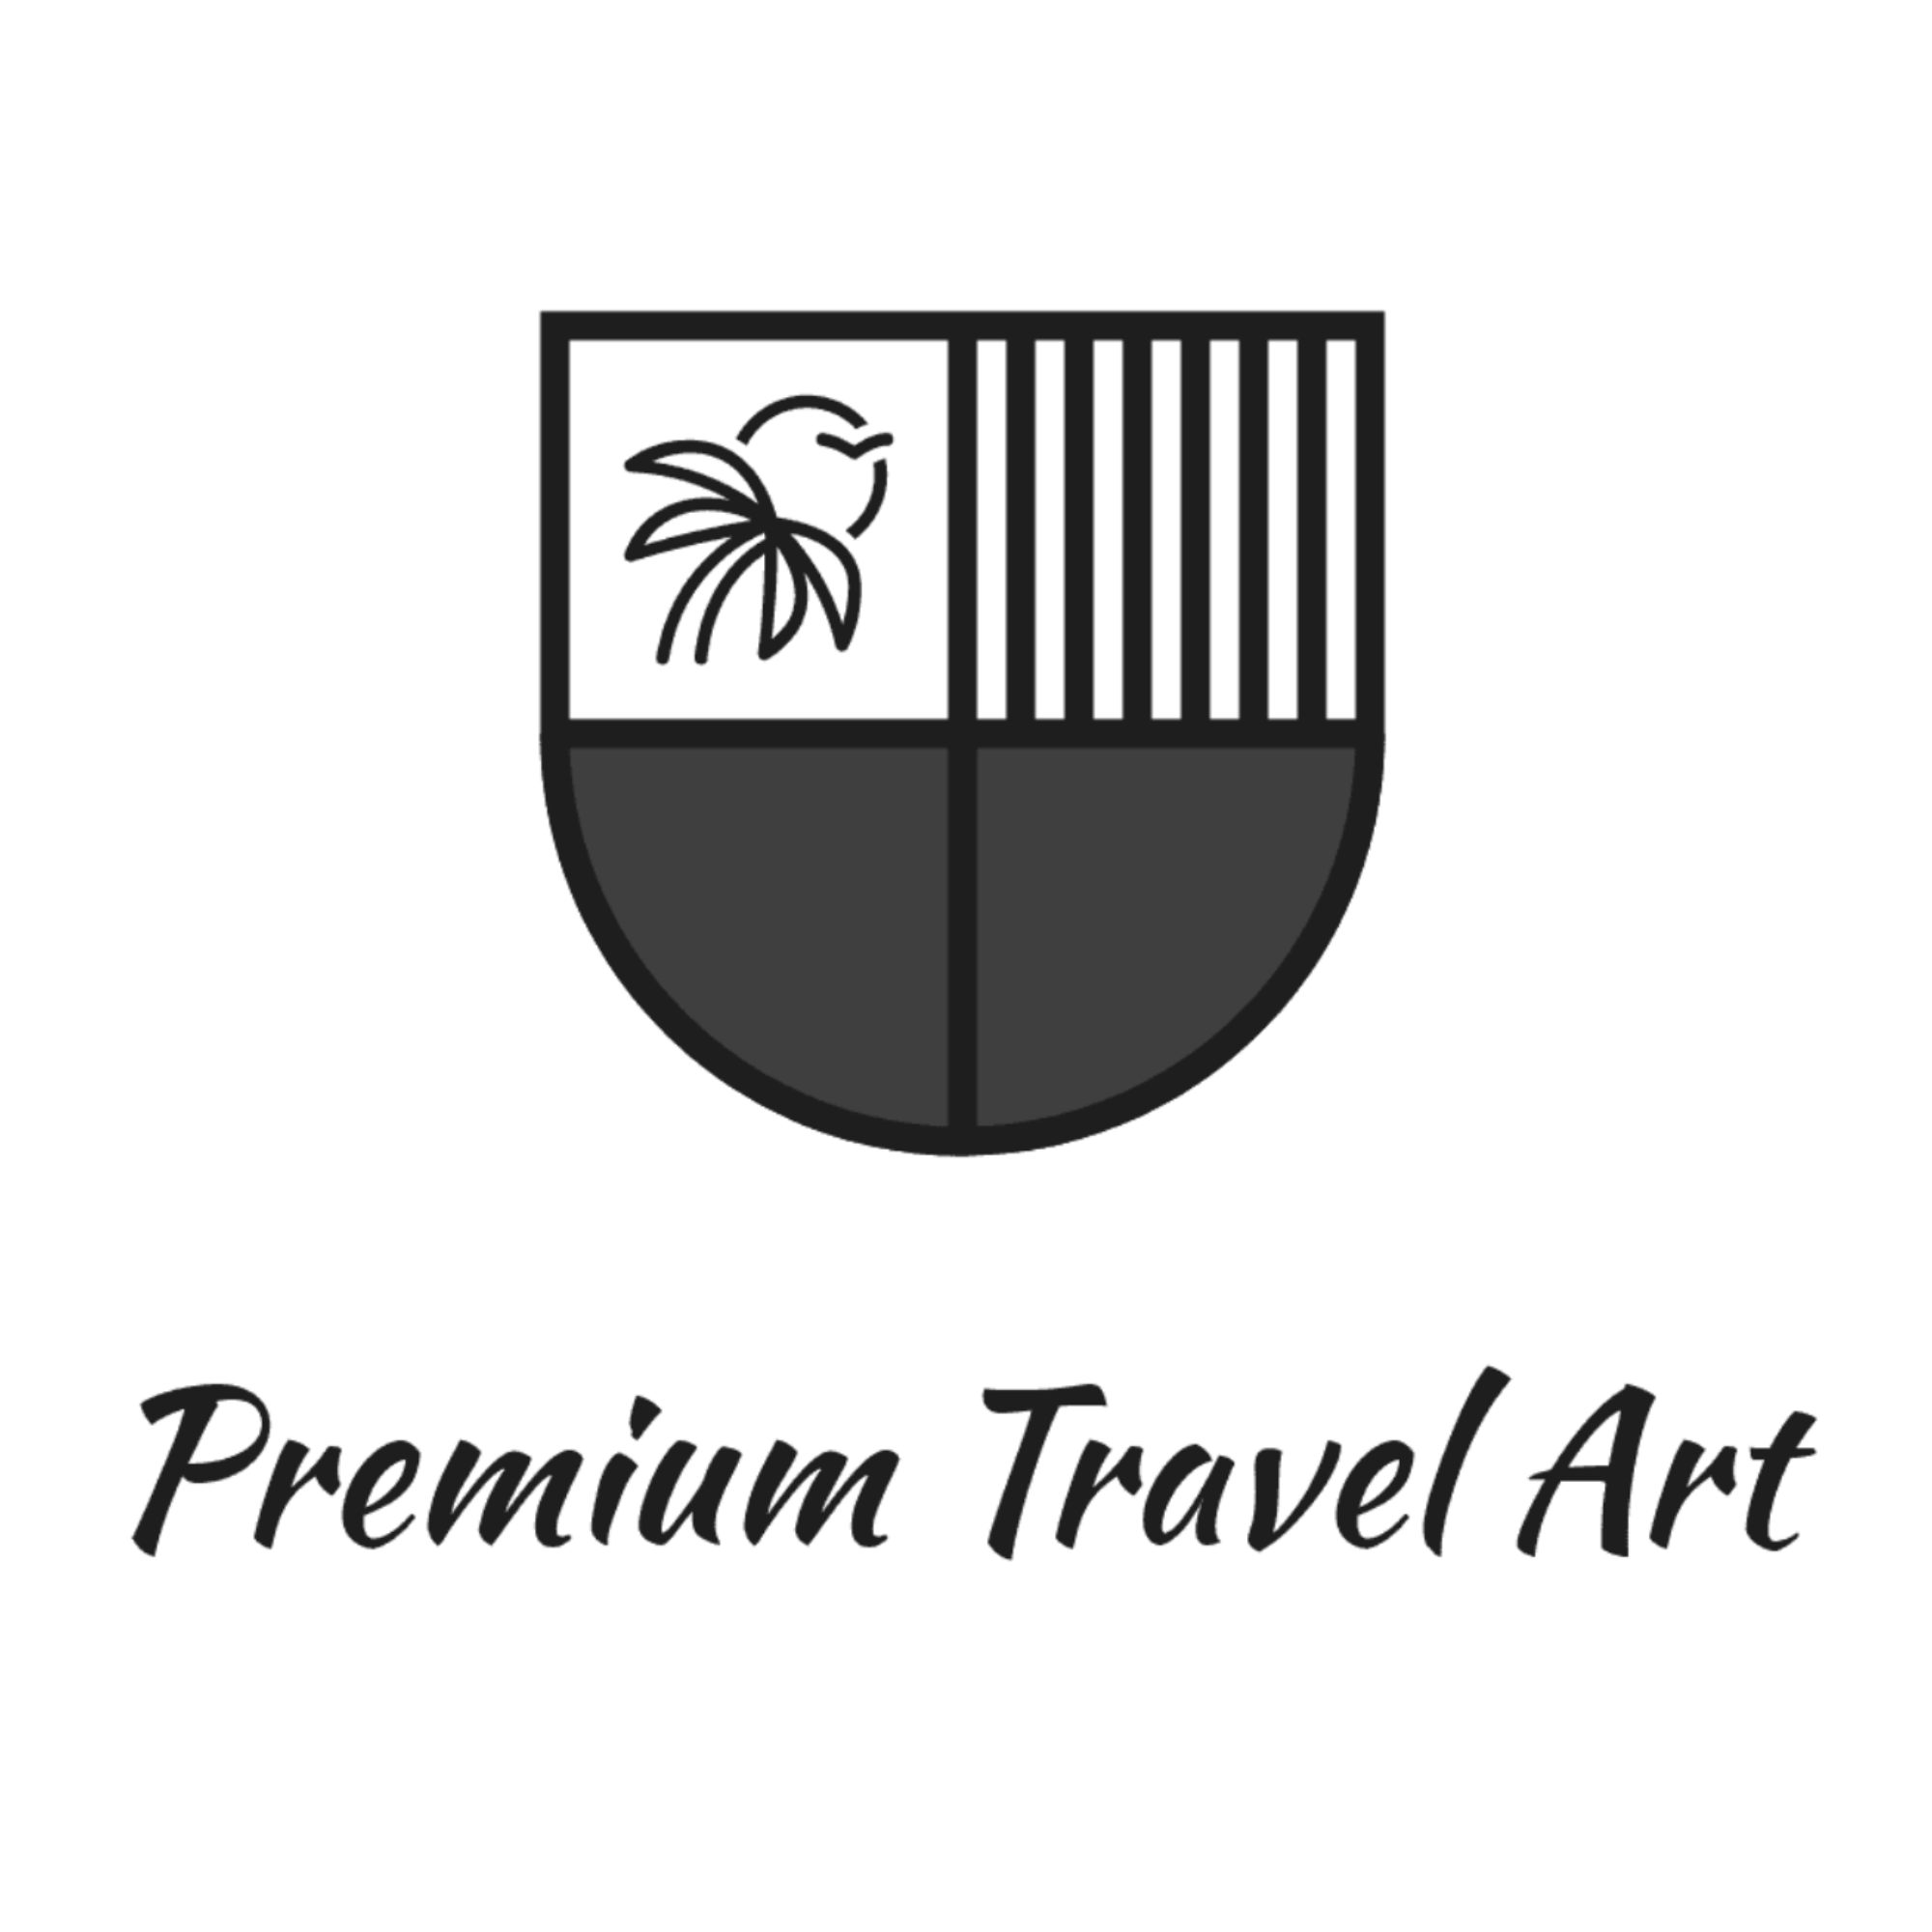 Premium Travel Art